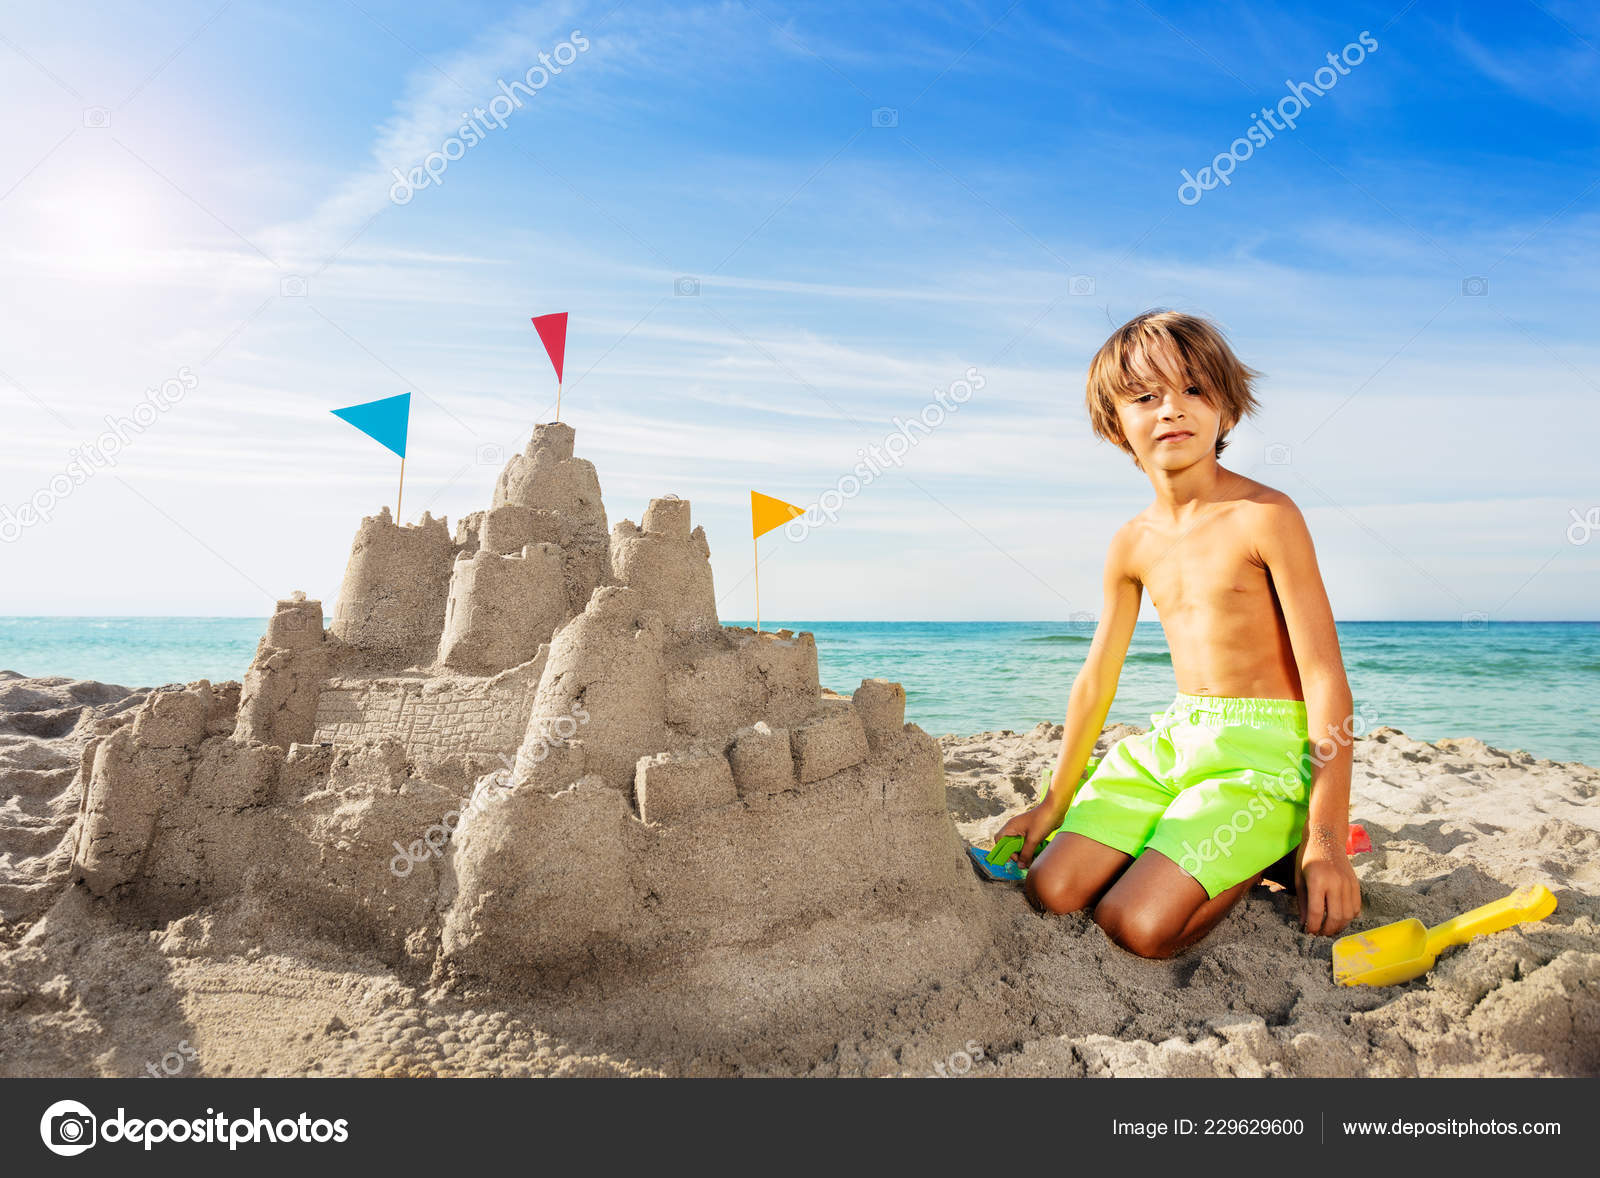 garçons heureux faisant un château de sable sur la plage